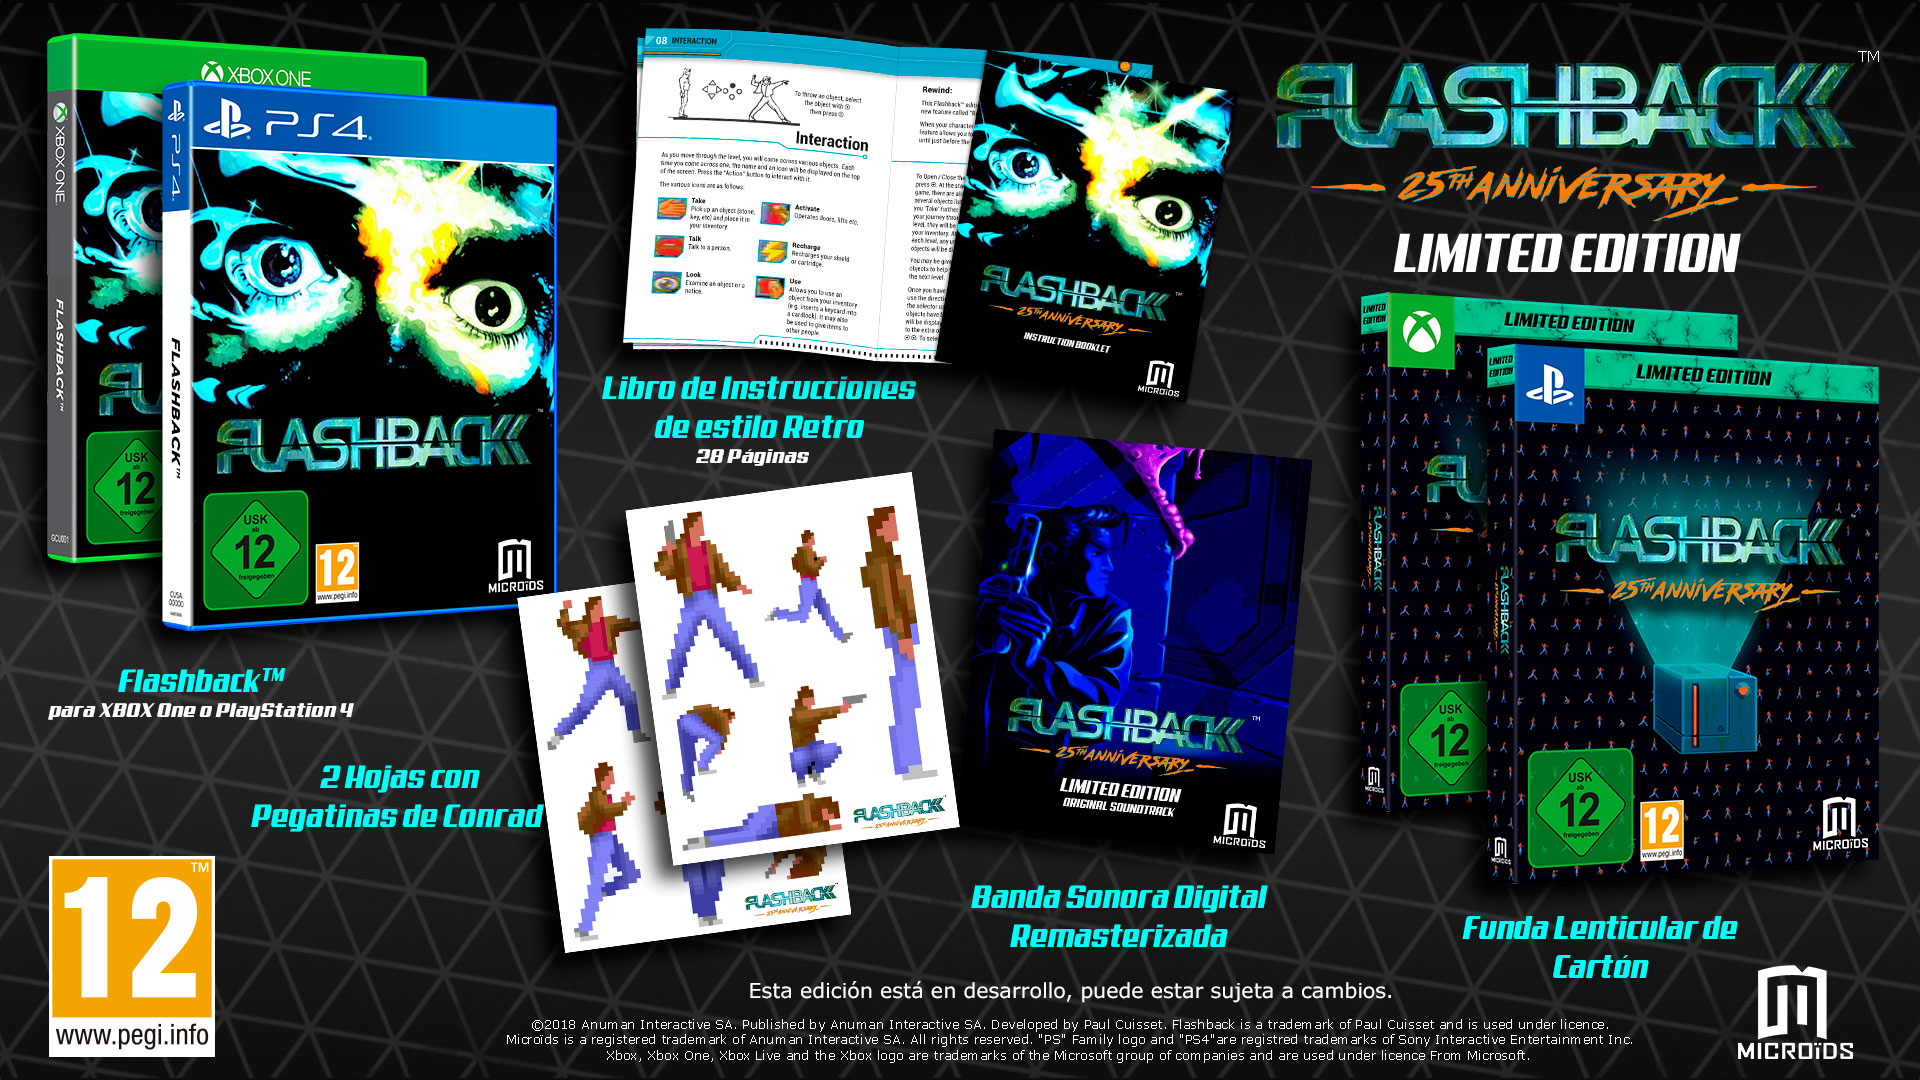 Flashback 25th Anniversary confirma su lanzamiento en PS4 y Xbox One para el 25 de octubre